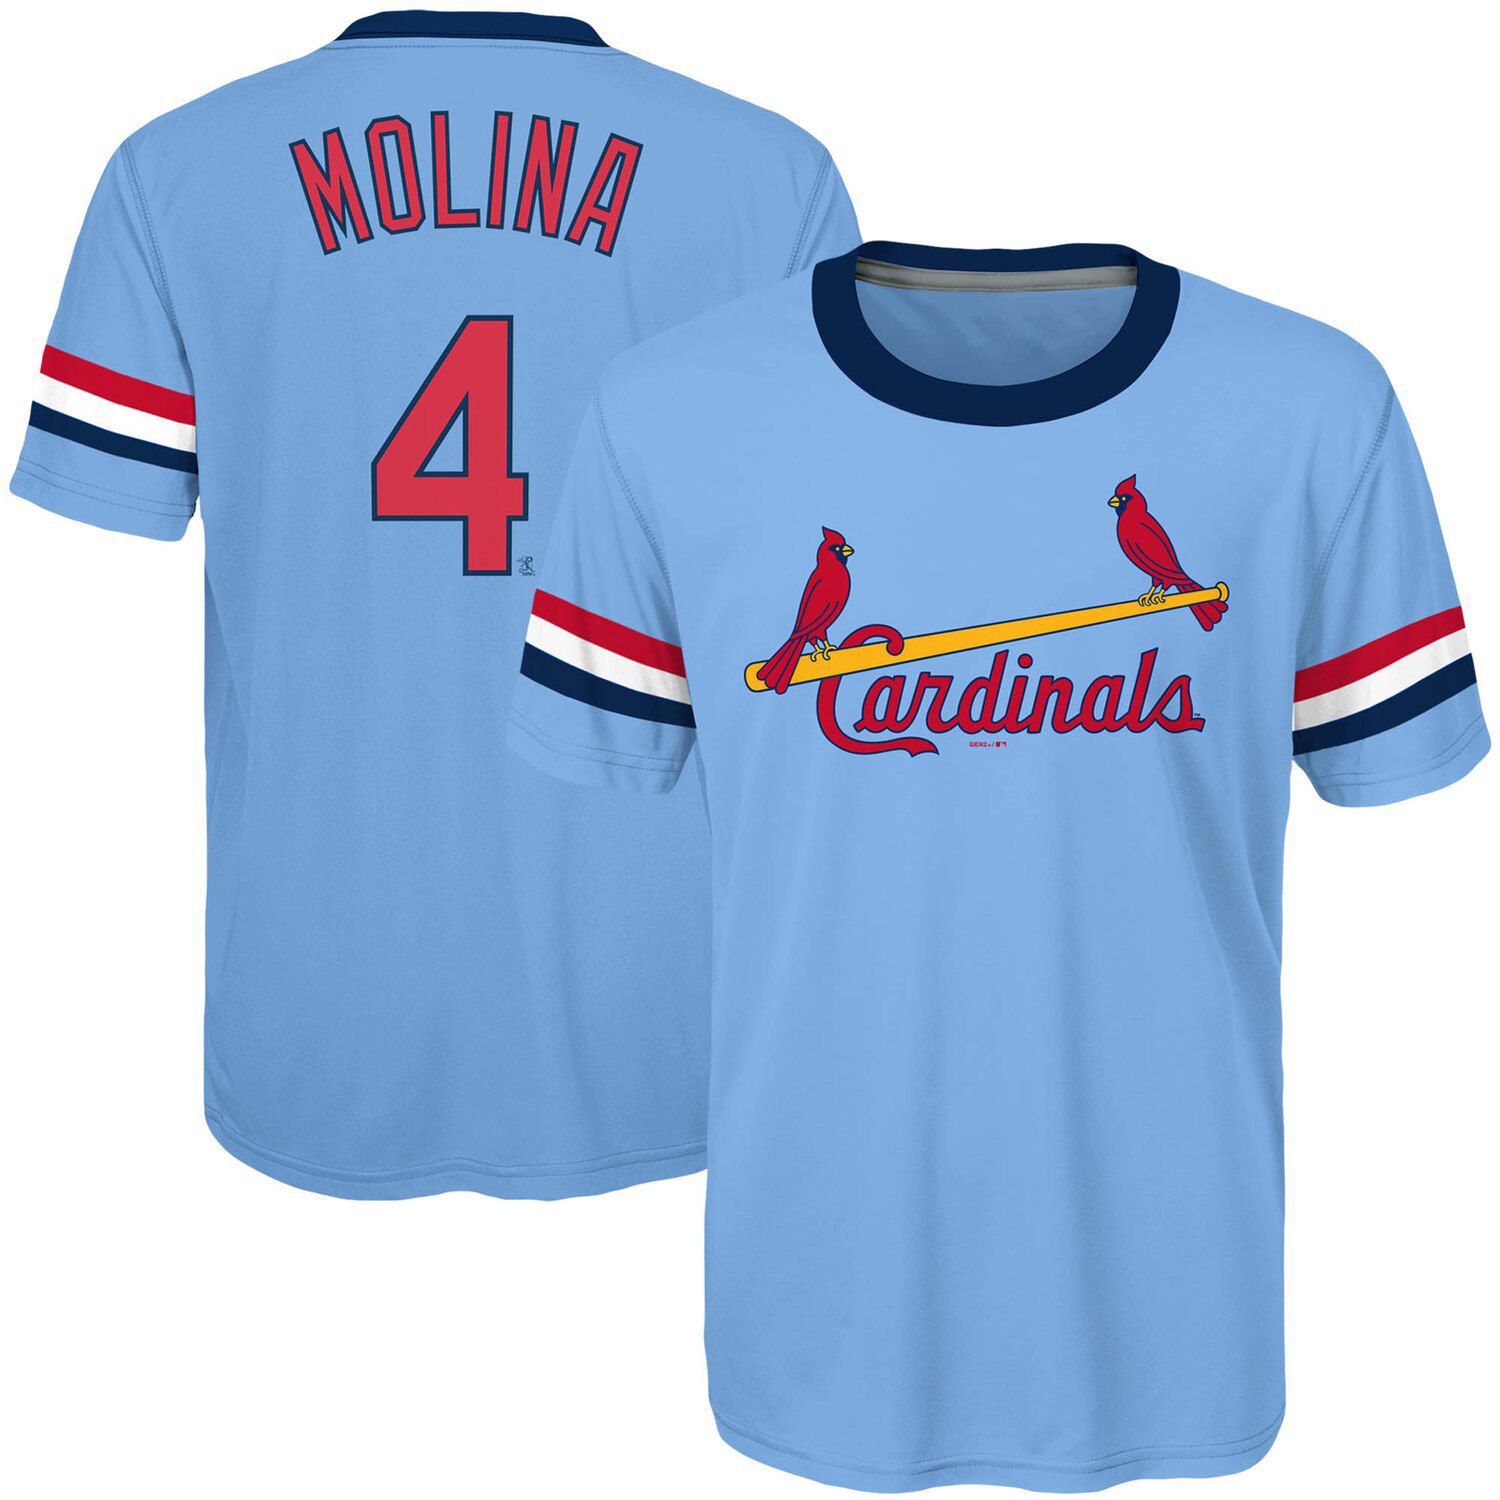 cardinals light blue jersey